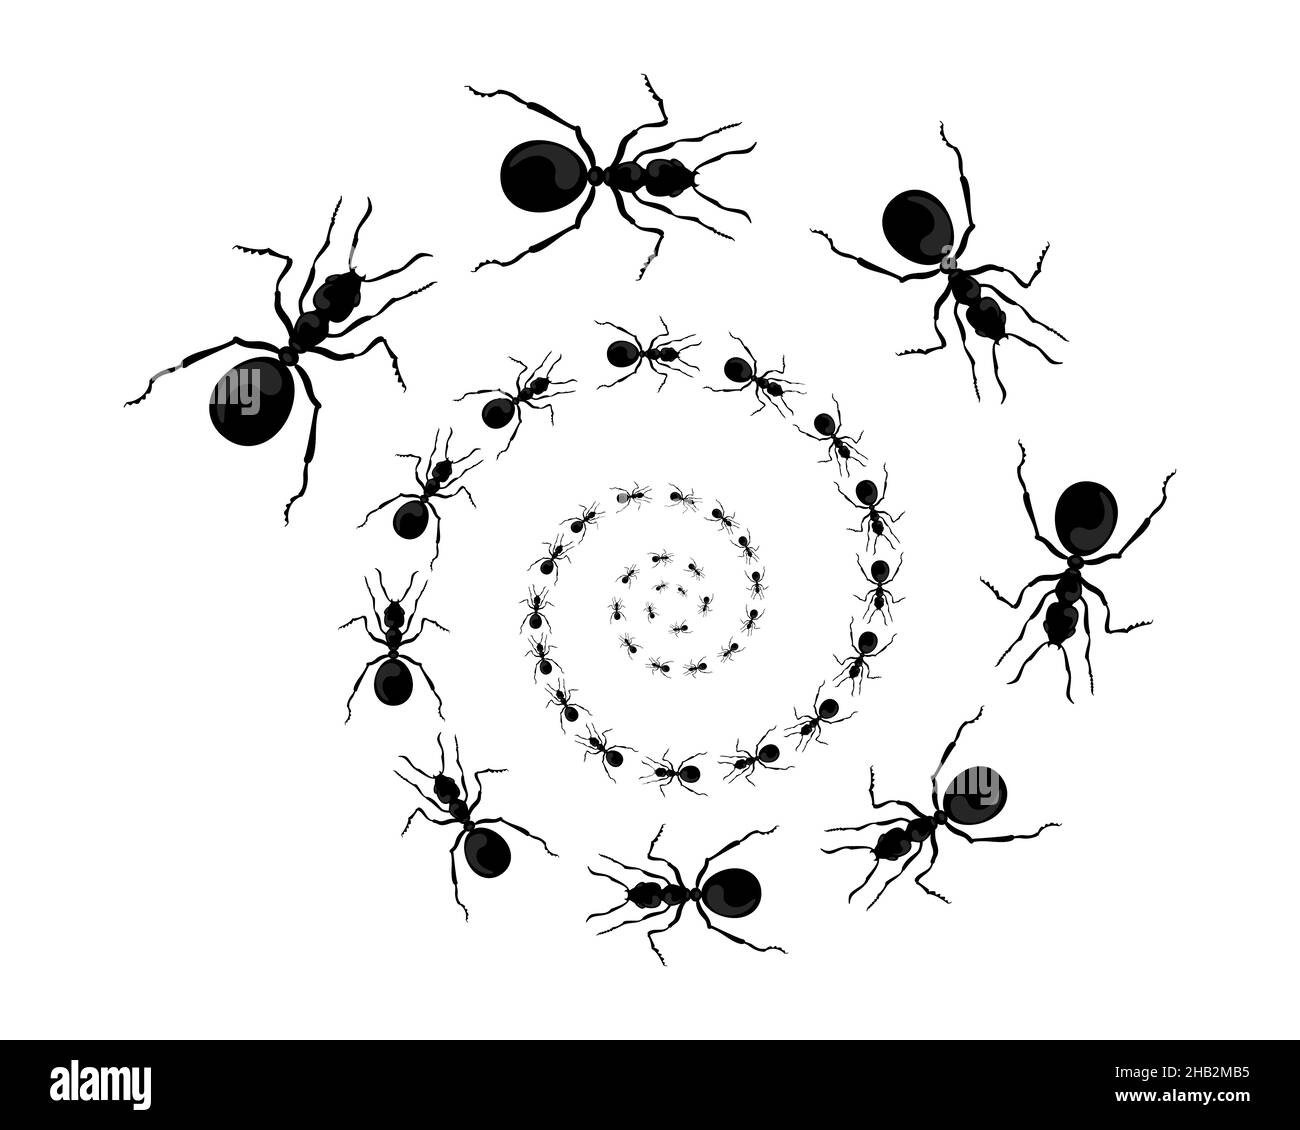 Ein Pfad von Ameisen, die hochlaufen. Blick von oben. Vektor-Illustration im flachen Cartoon-Stil Stock Vektor